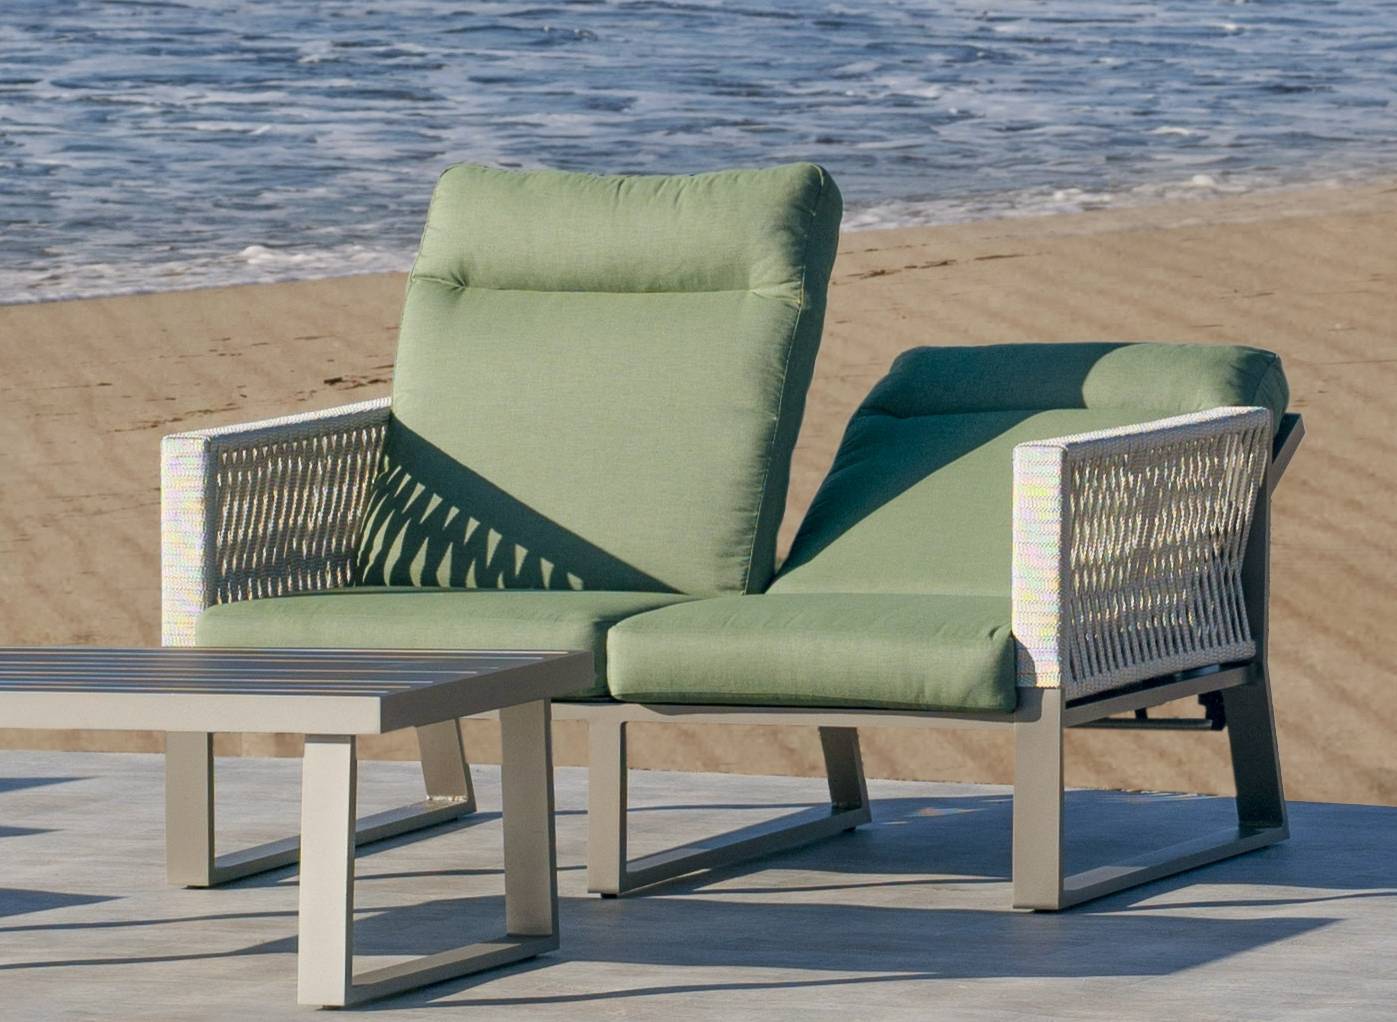 Sofá relax 2 plazas lujo, con respaldos reclinables. Fabricado de aluminio y cuerda en color blanco, gris, marrón o champagne.